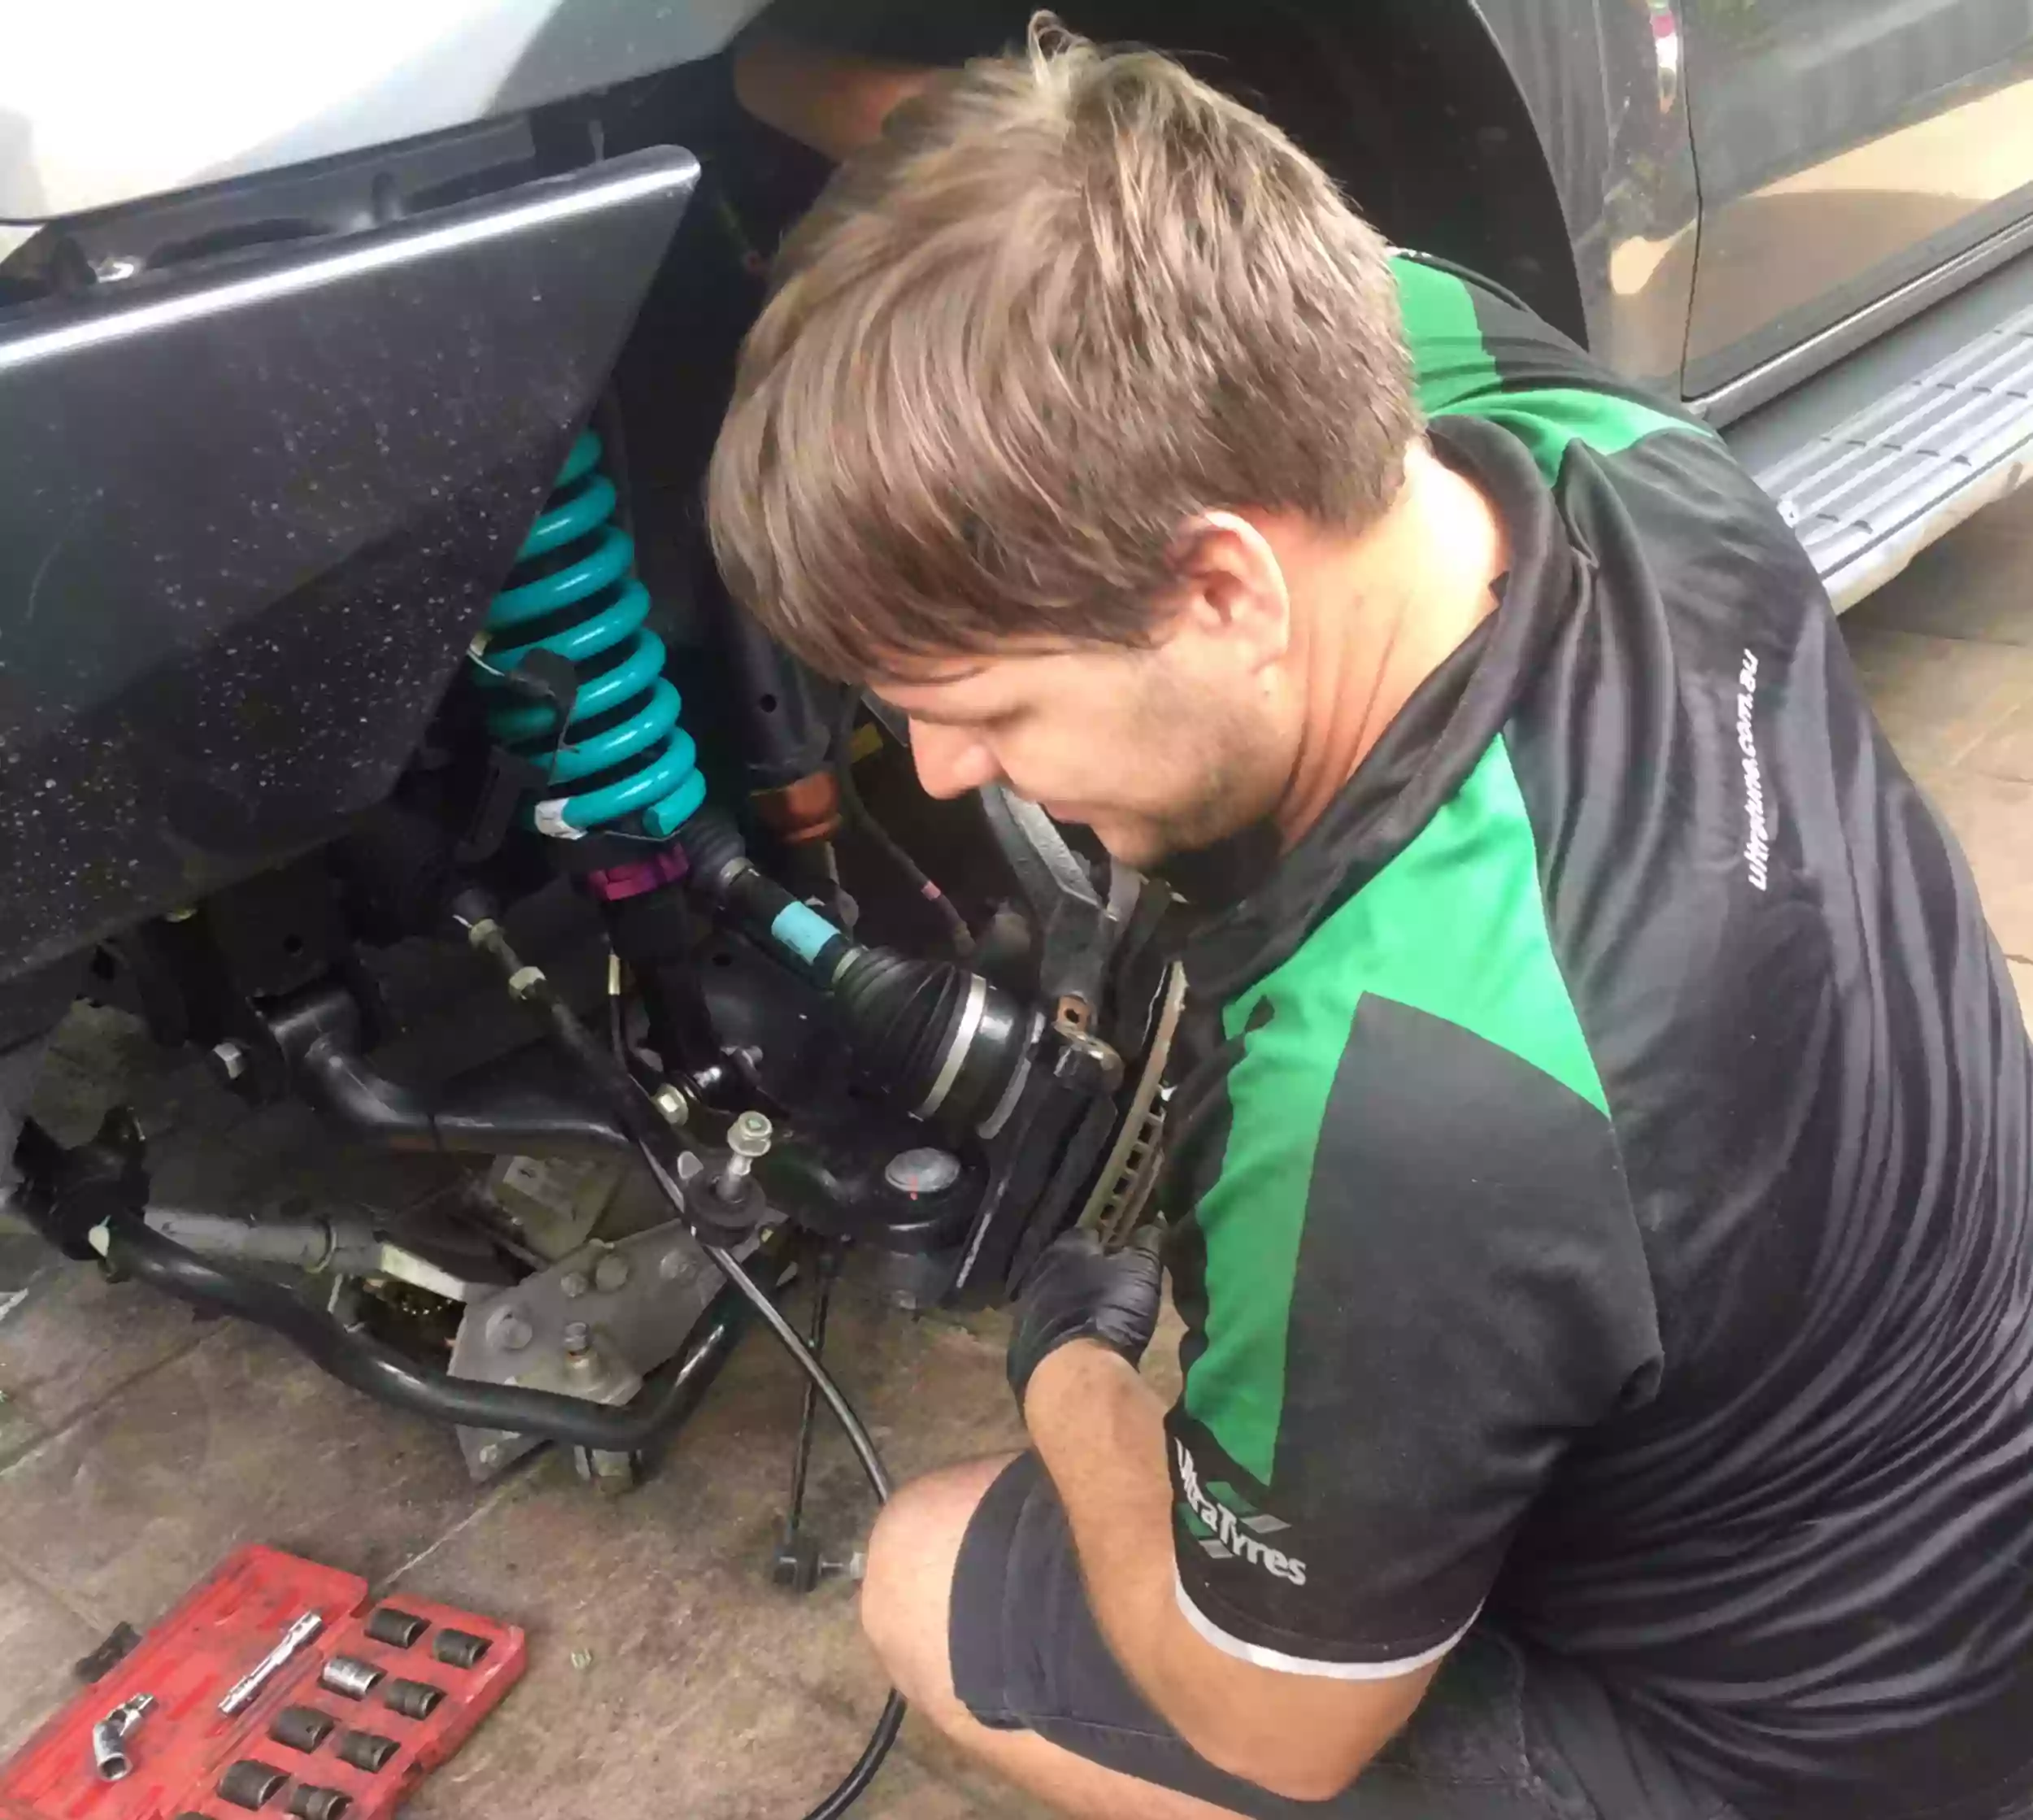 Shane's mobile mechanic